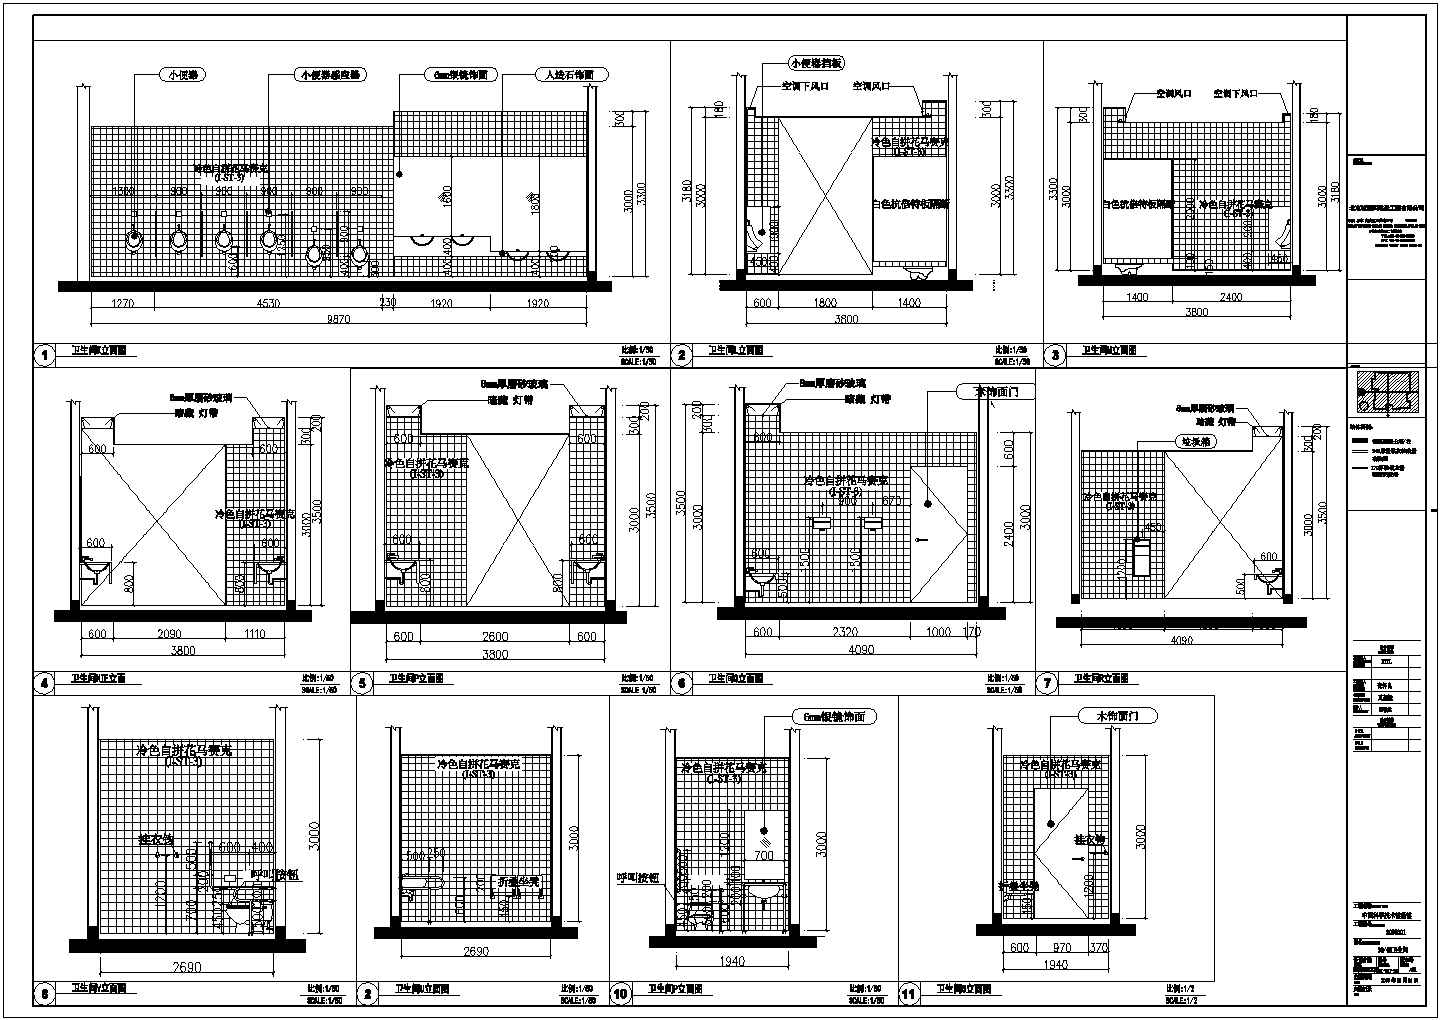 中国科技馆部分室内装修建筑设计方案图纸